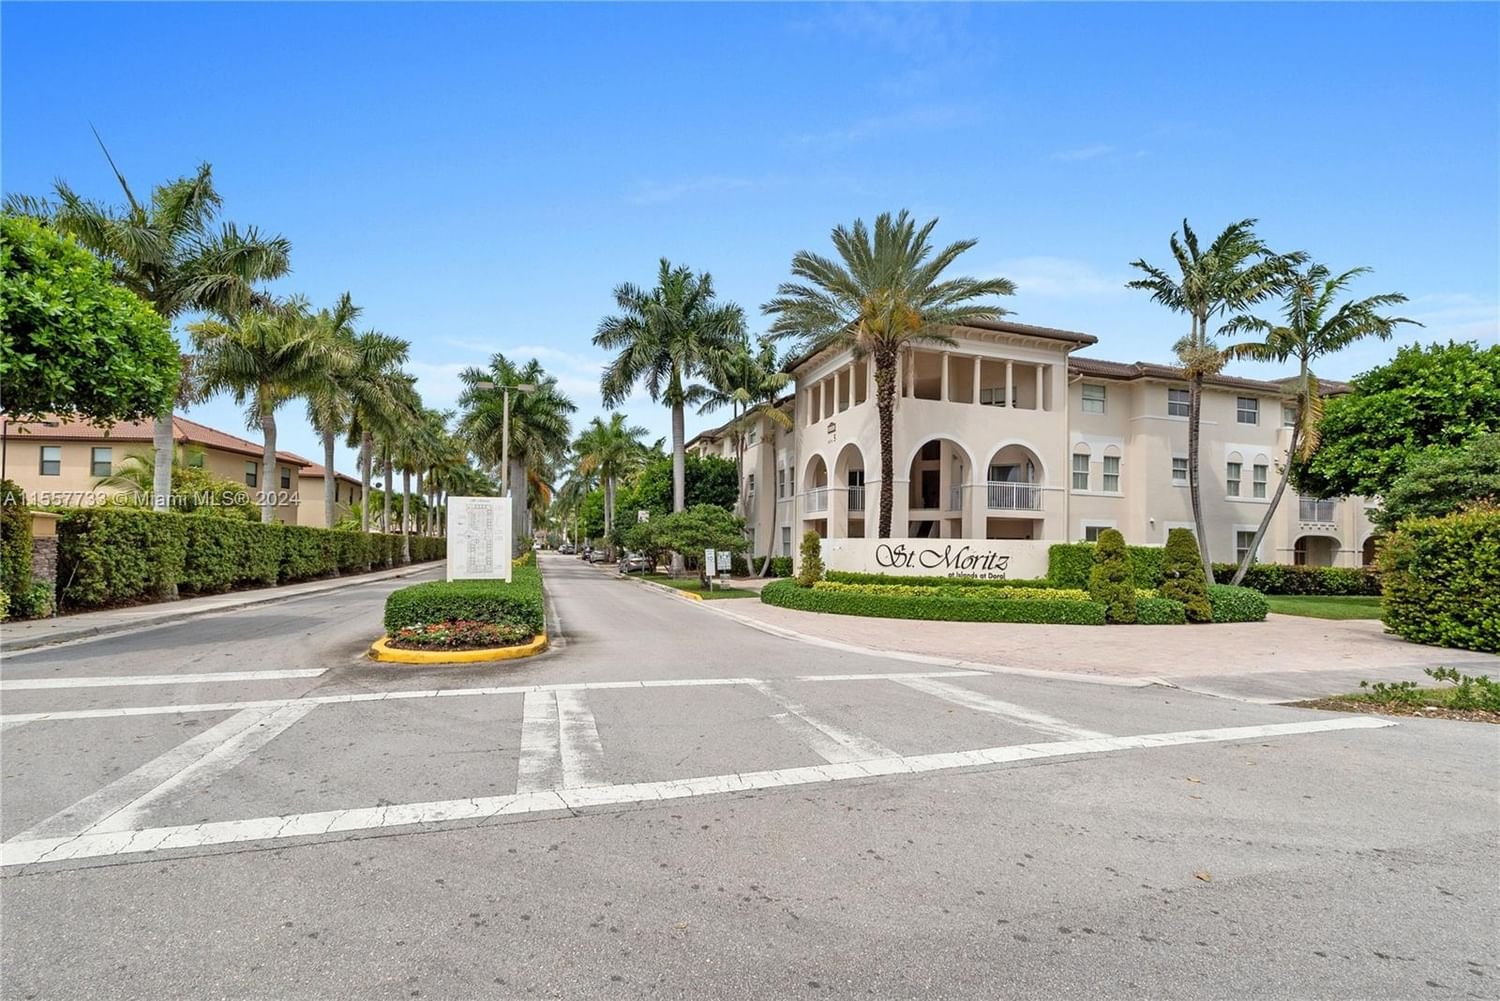 Real estate property located at 11503 89th St #215, Miami-Dade County, ST MORTIZ AT DORAL CONDO, Doral, FL